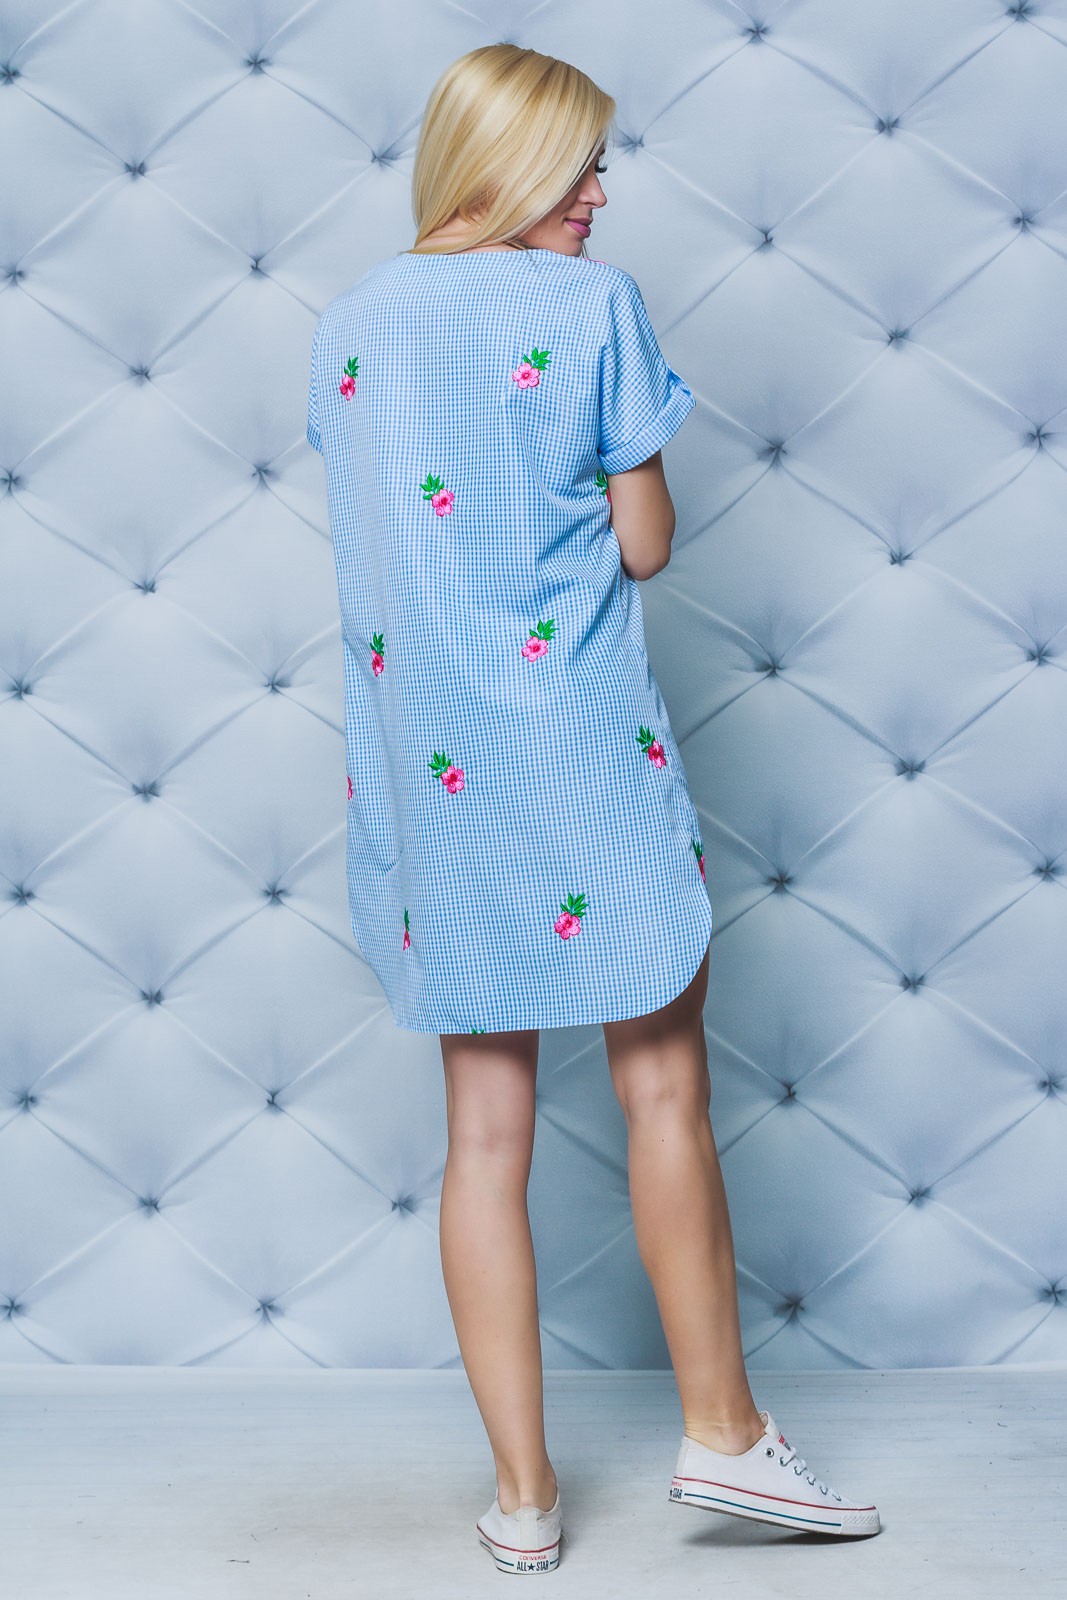 Короткое летнее платье с вышивкой голубое 02233/6 цена